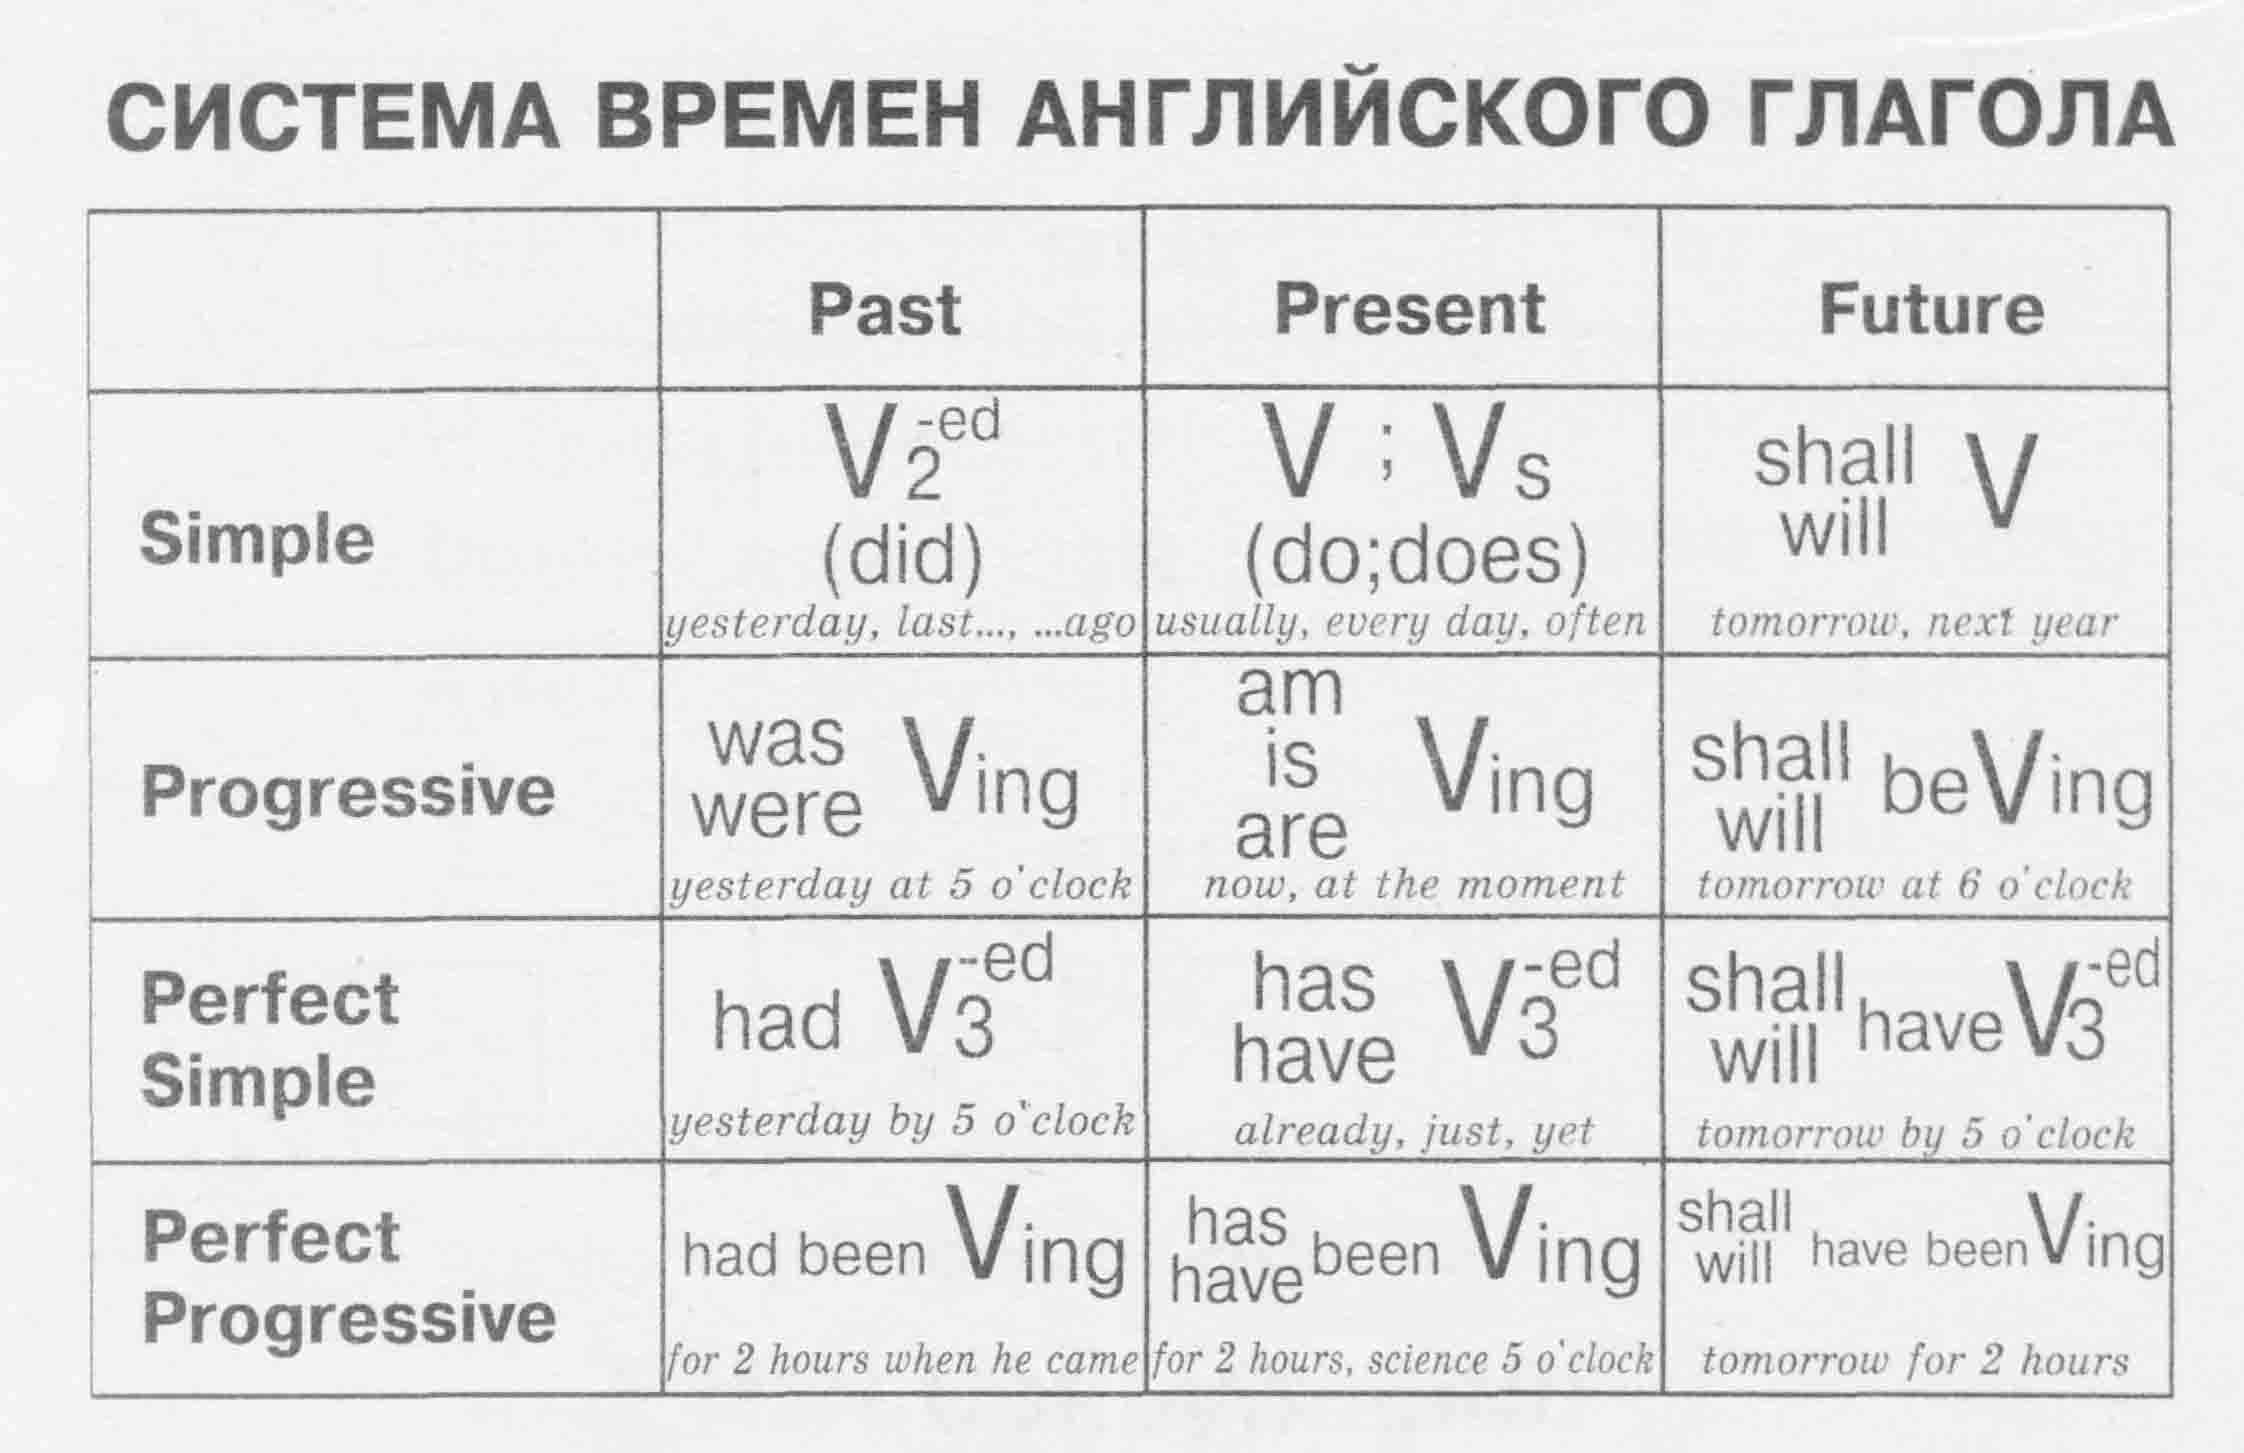 Грамматические времена в русском языке